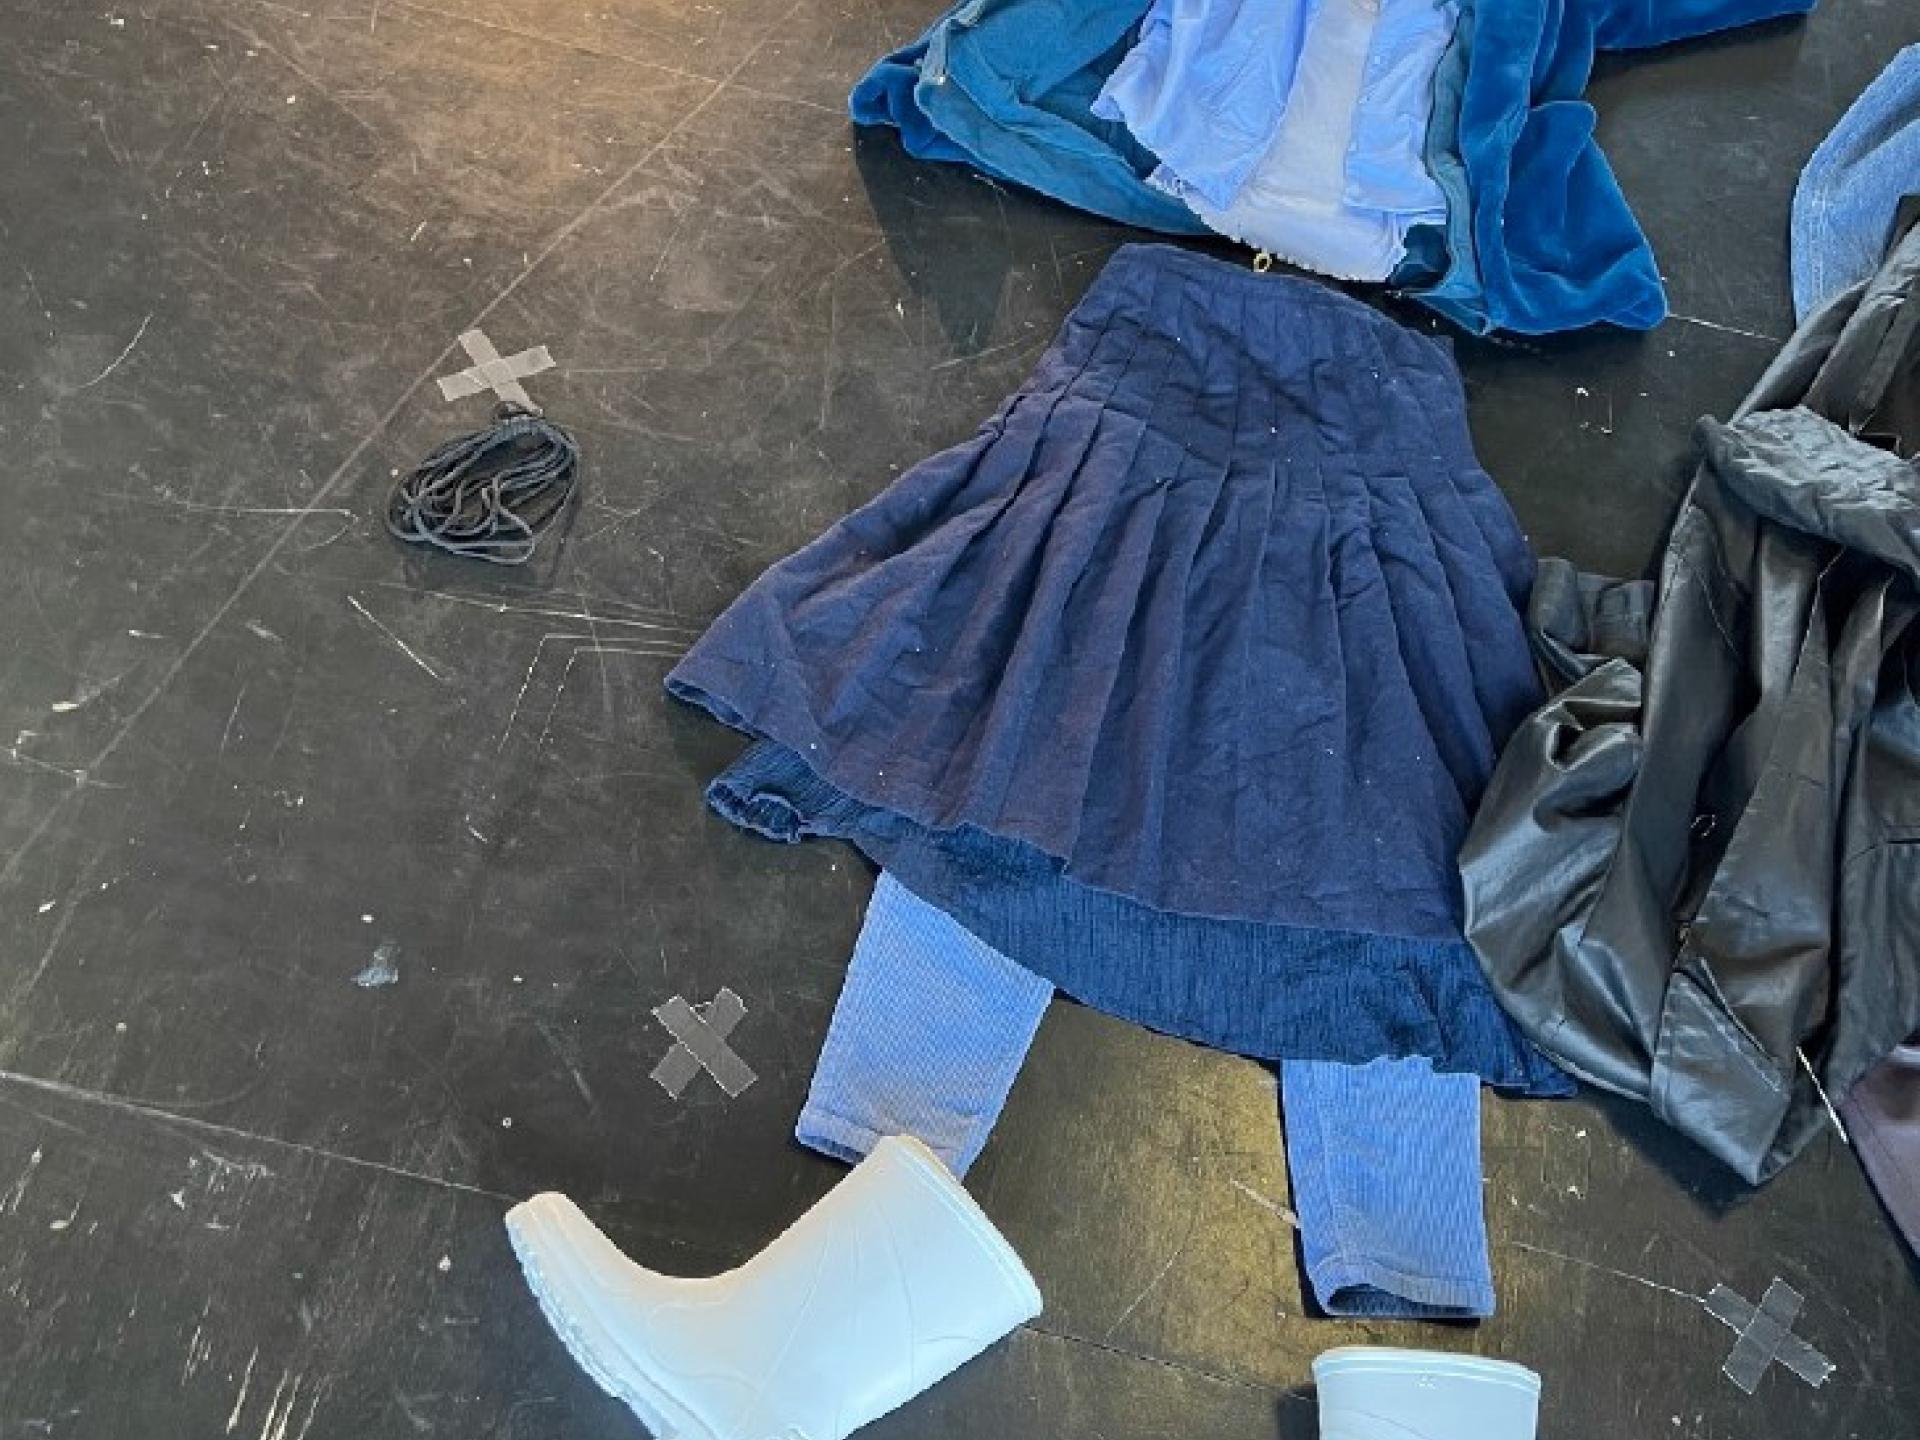 Auf dem Boden liegend Kleidungsstücke in verschiedenen Blautönen: ein Rock, eine Hose, ein Hemd, eine Jacke und weisse Gummistiefel.